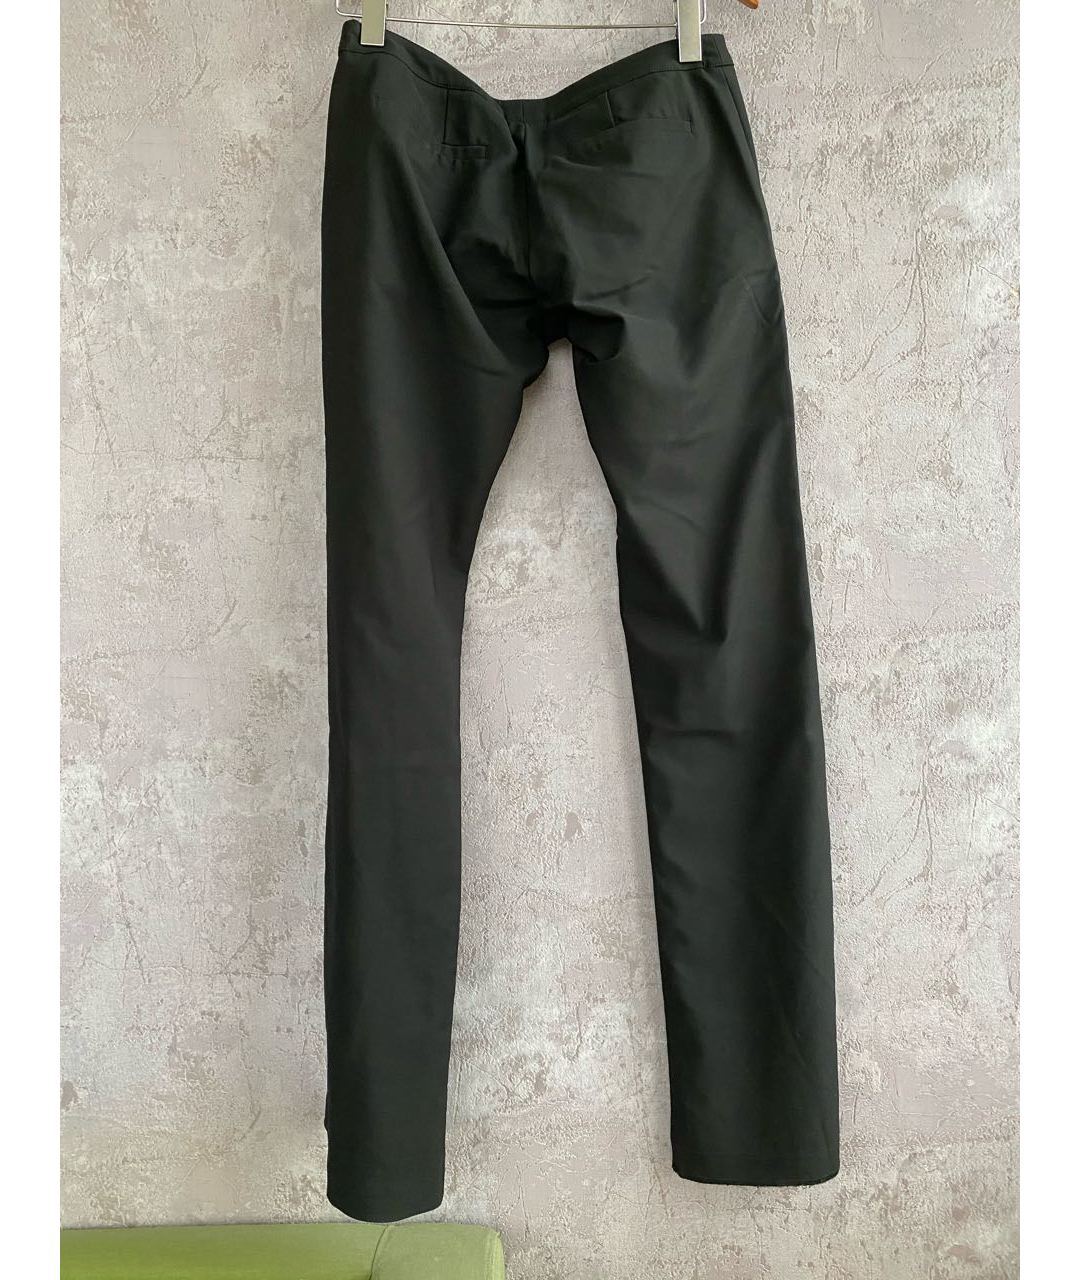 ELISABETTA FRANCHI Черные брюки узкие, фото 2